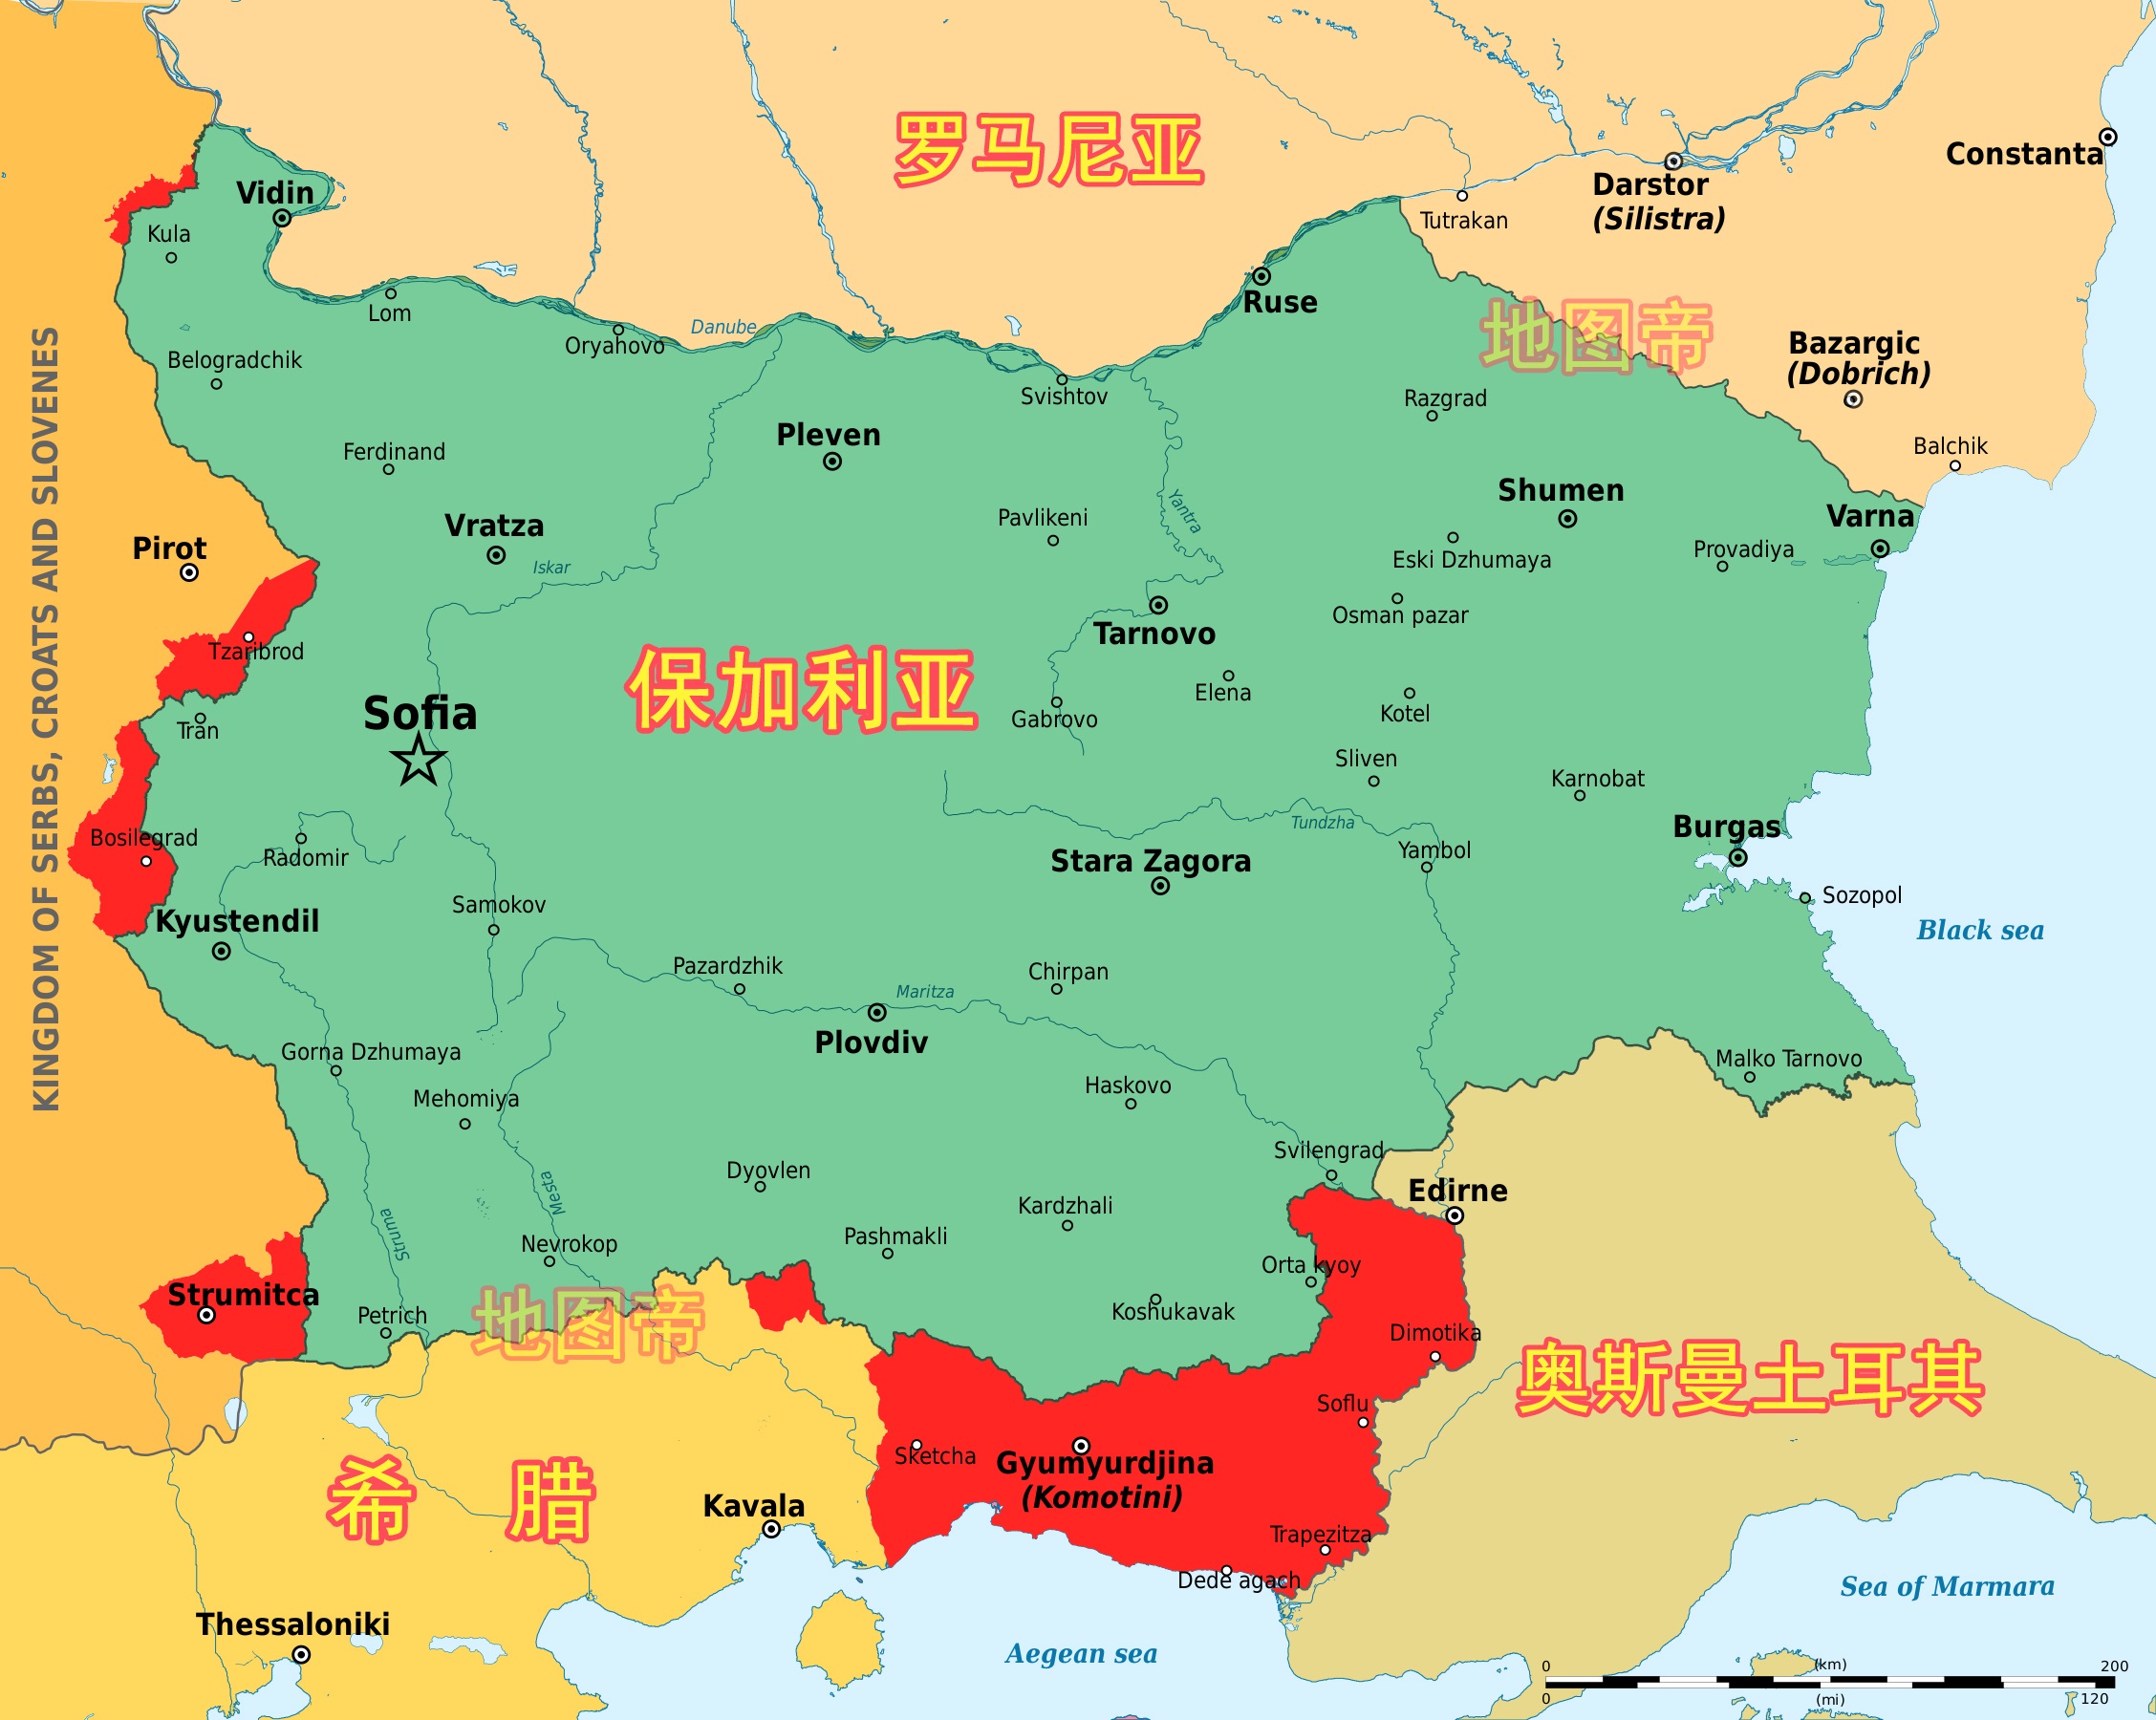 保加利亚地理位置图片